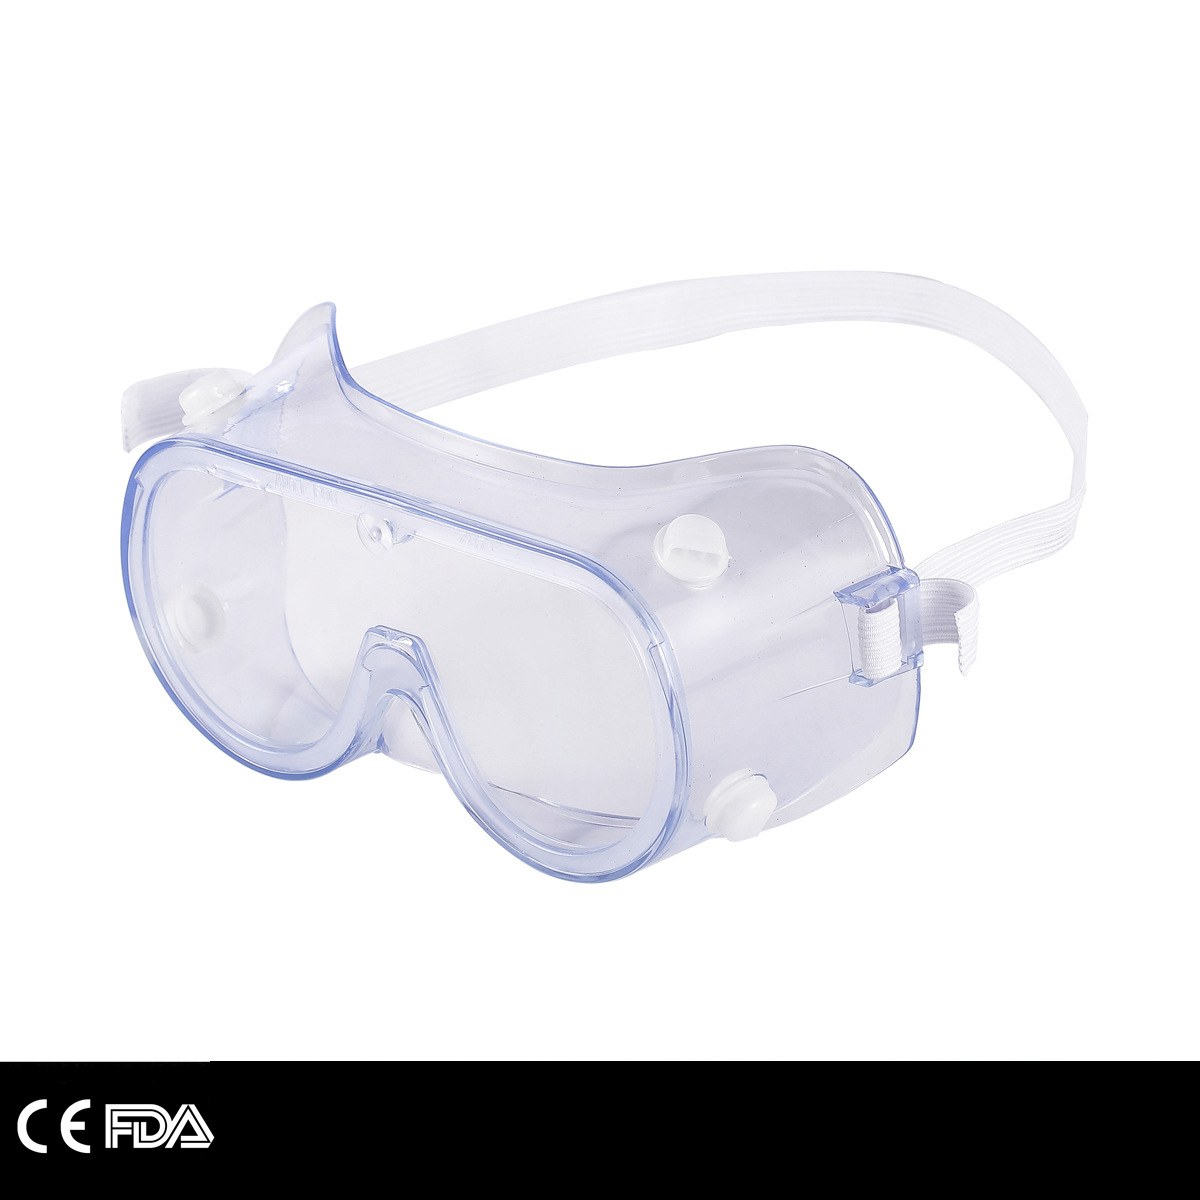 Beschermende veiligheidsbril werkt anti-stof anti-condens anti-zand anti-stof anti-speeksel winddichte transparante bril oogbescherming